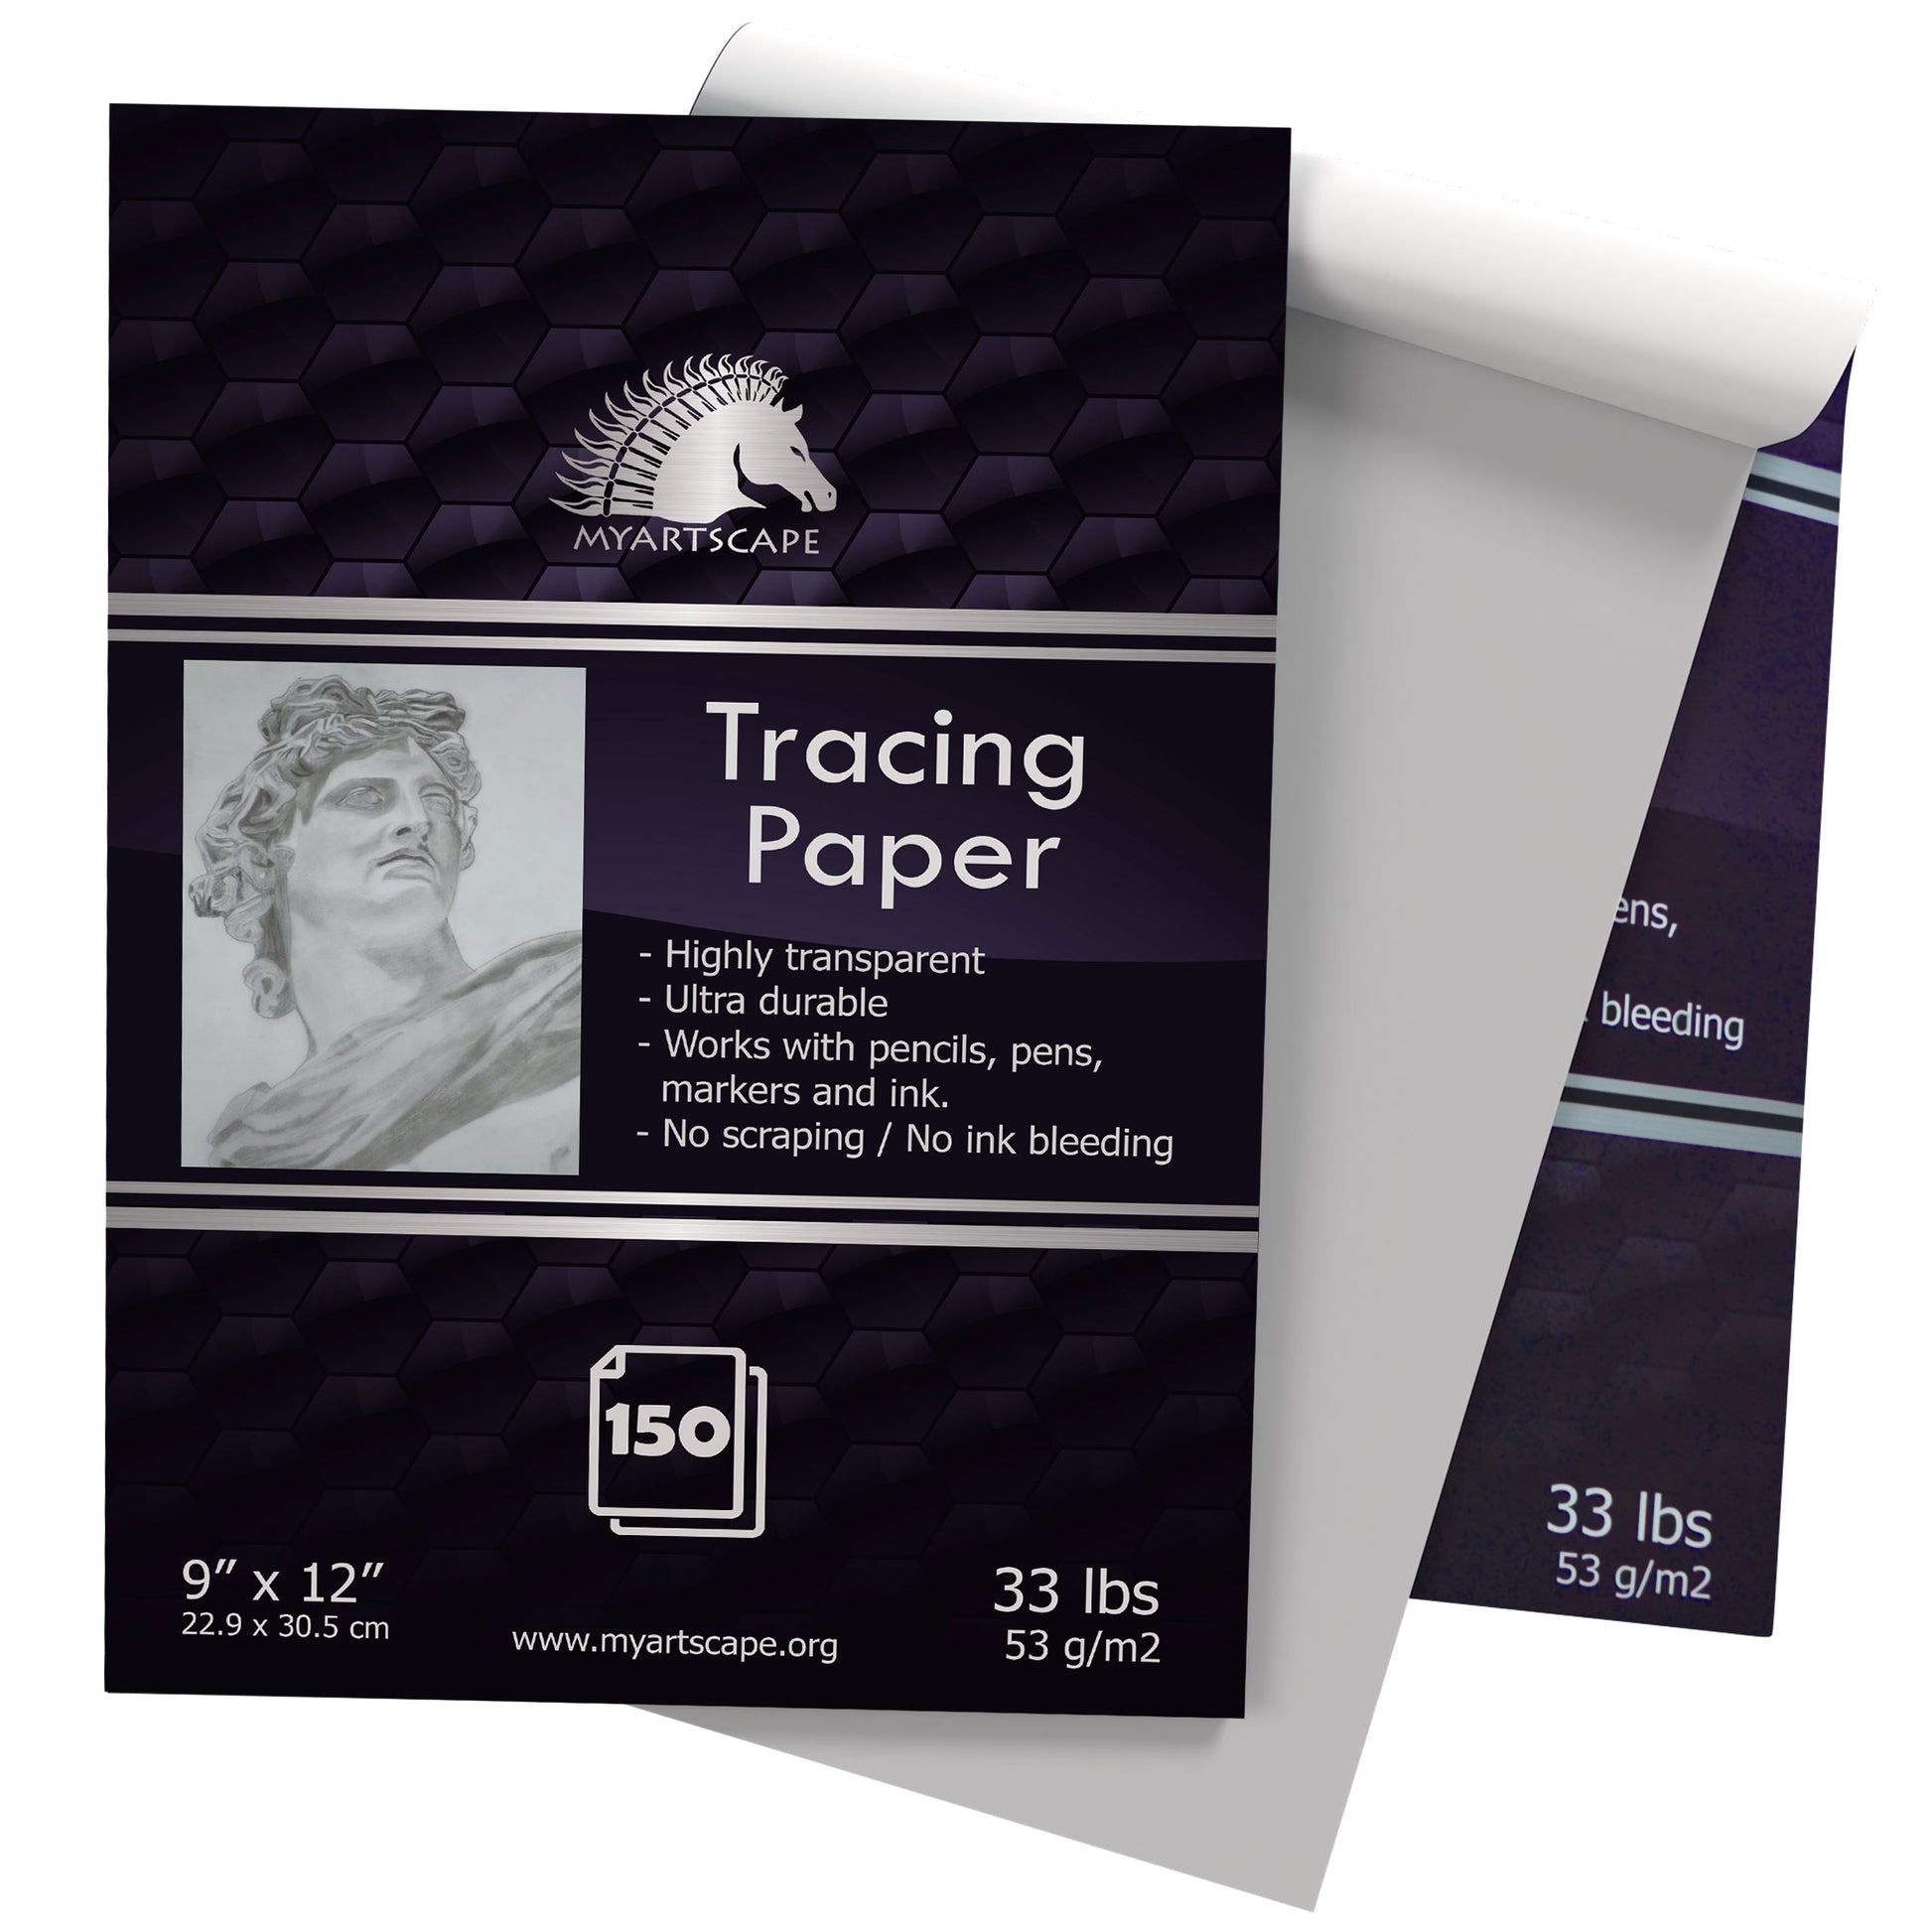 Tracing Paper Pad, 33lb - 9 x 12 - 150 Transparent Sheets